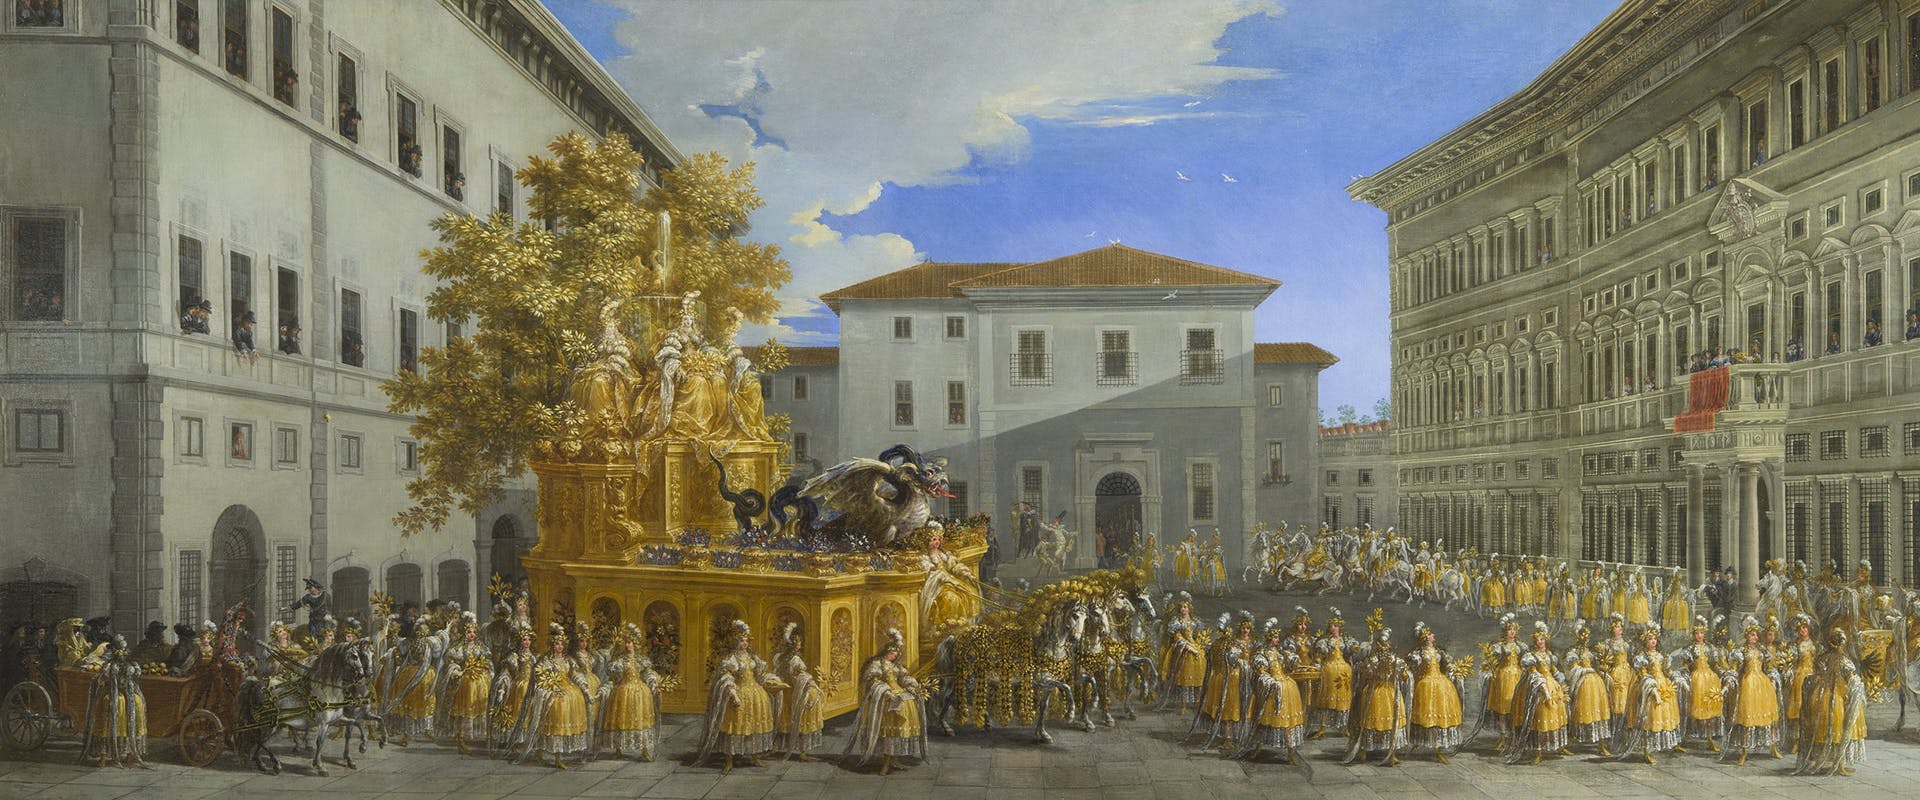 Il Carro d'oro di Johann Paul Schor.  L’effimero splendore dei carnevali barocchi